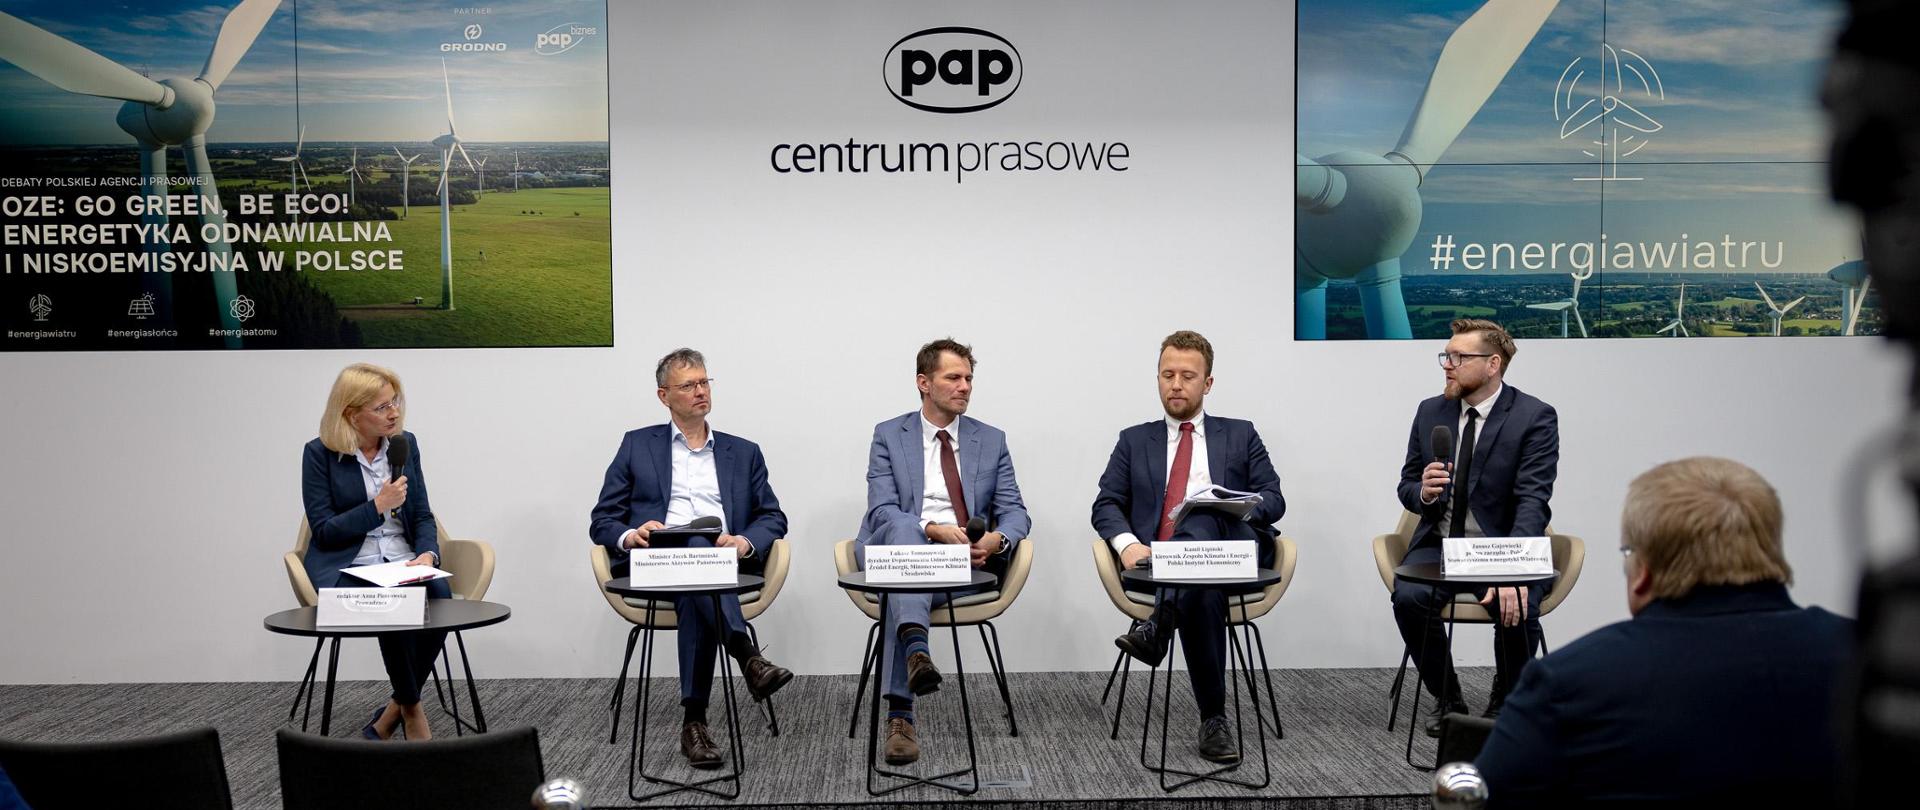 Na zdjęciu siedzi pięć osób. Drugi od lewej siedzi wiceminister Jacek Bartmiński w granatowym garniturze. W tle napis: PAP, centrum prasowe. 